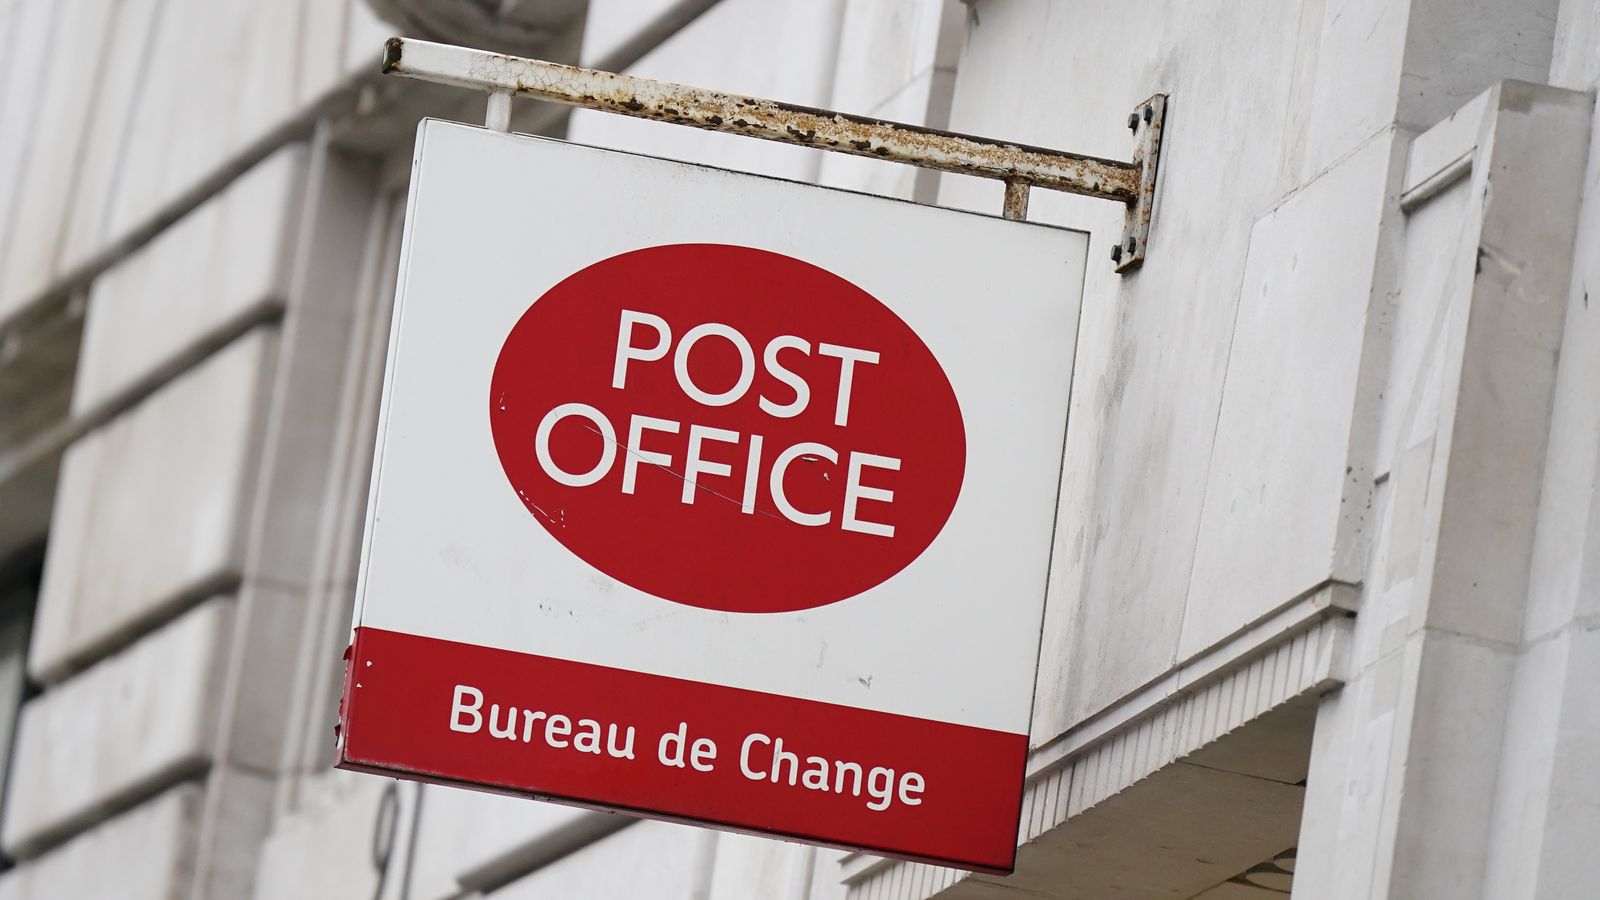 Пощенската служба се „опитва да изопачи хода на правосъдието“, твърди адвокат в ново подаване на запитване